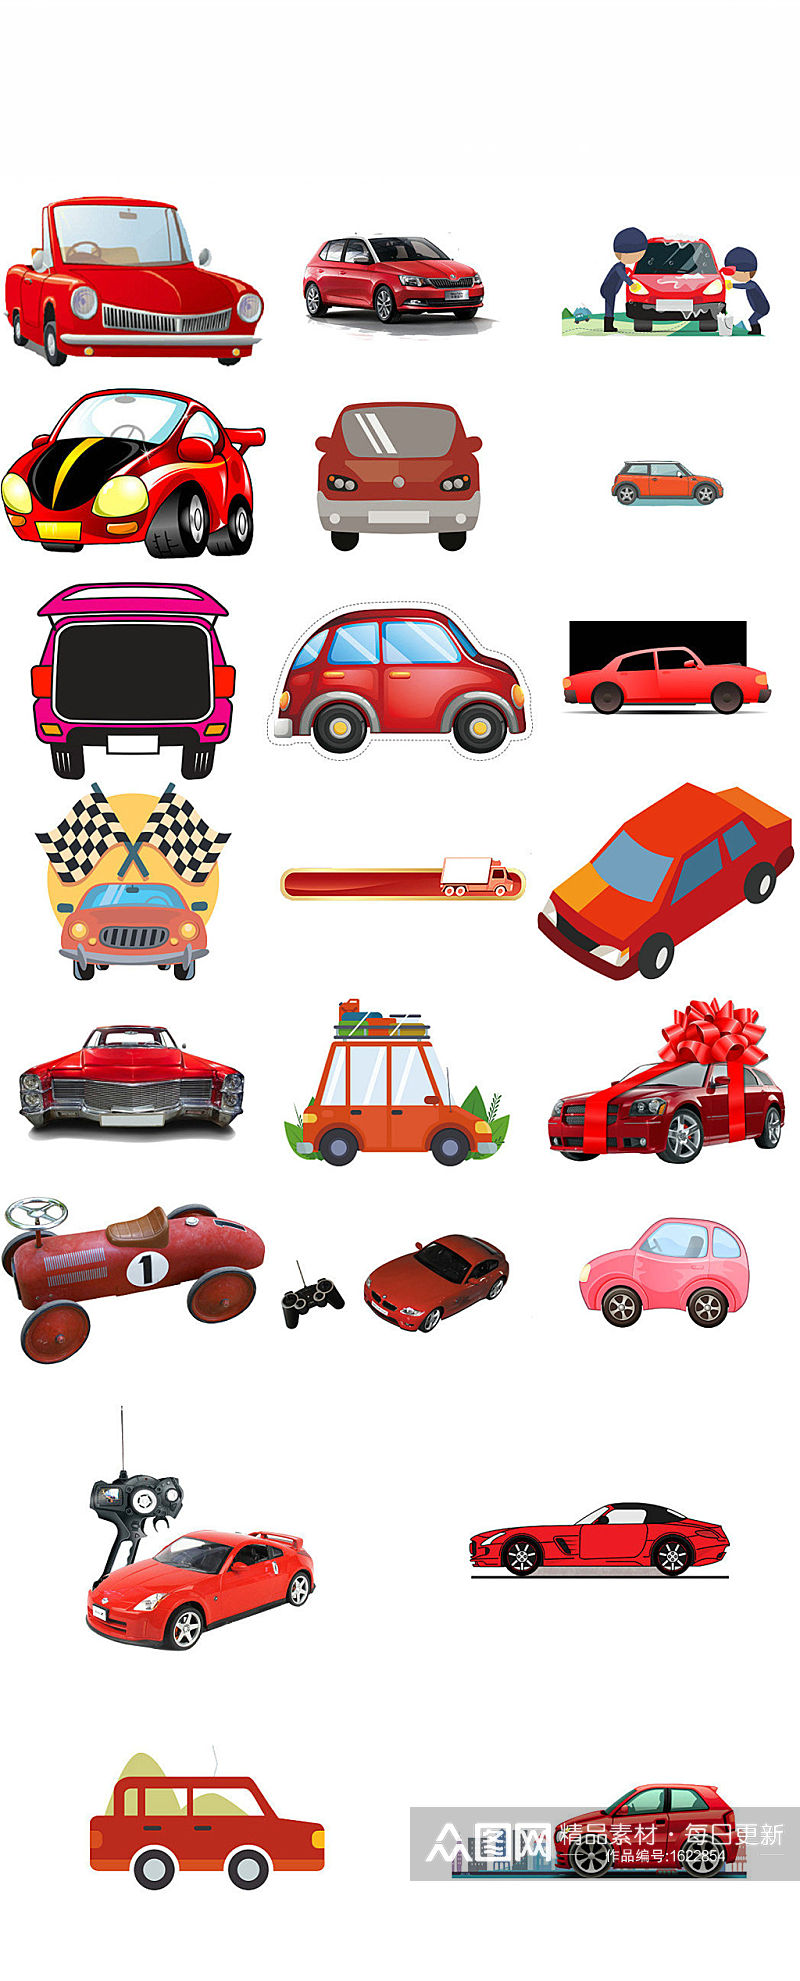 红色小汽车ps美工设计素材素材